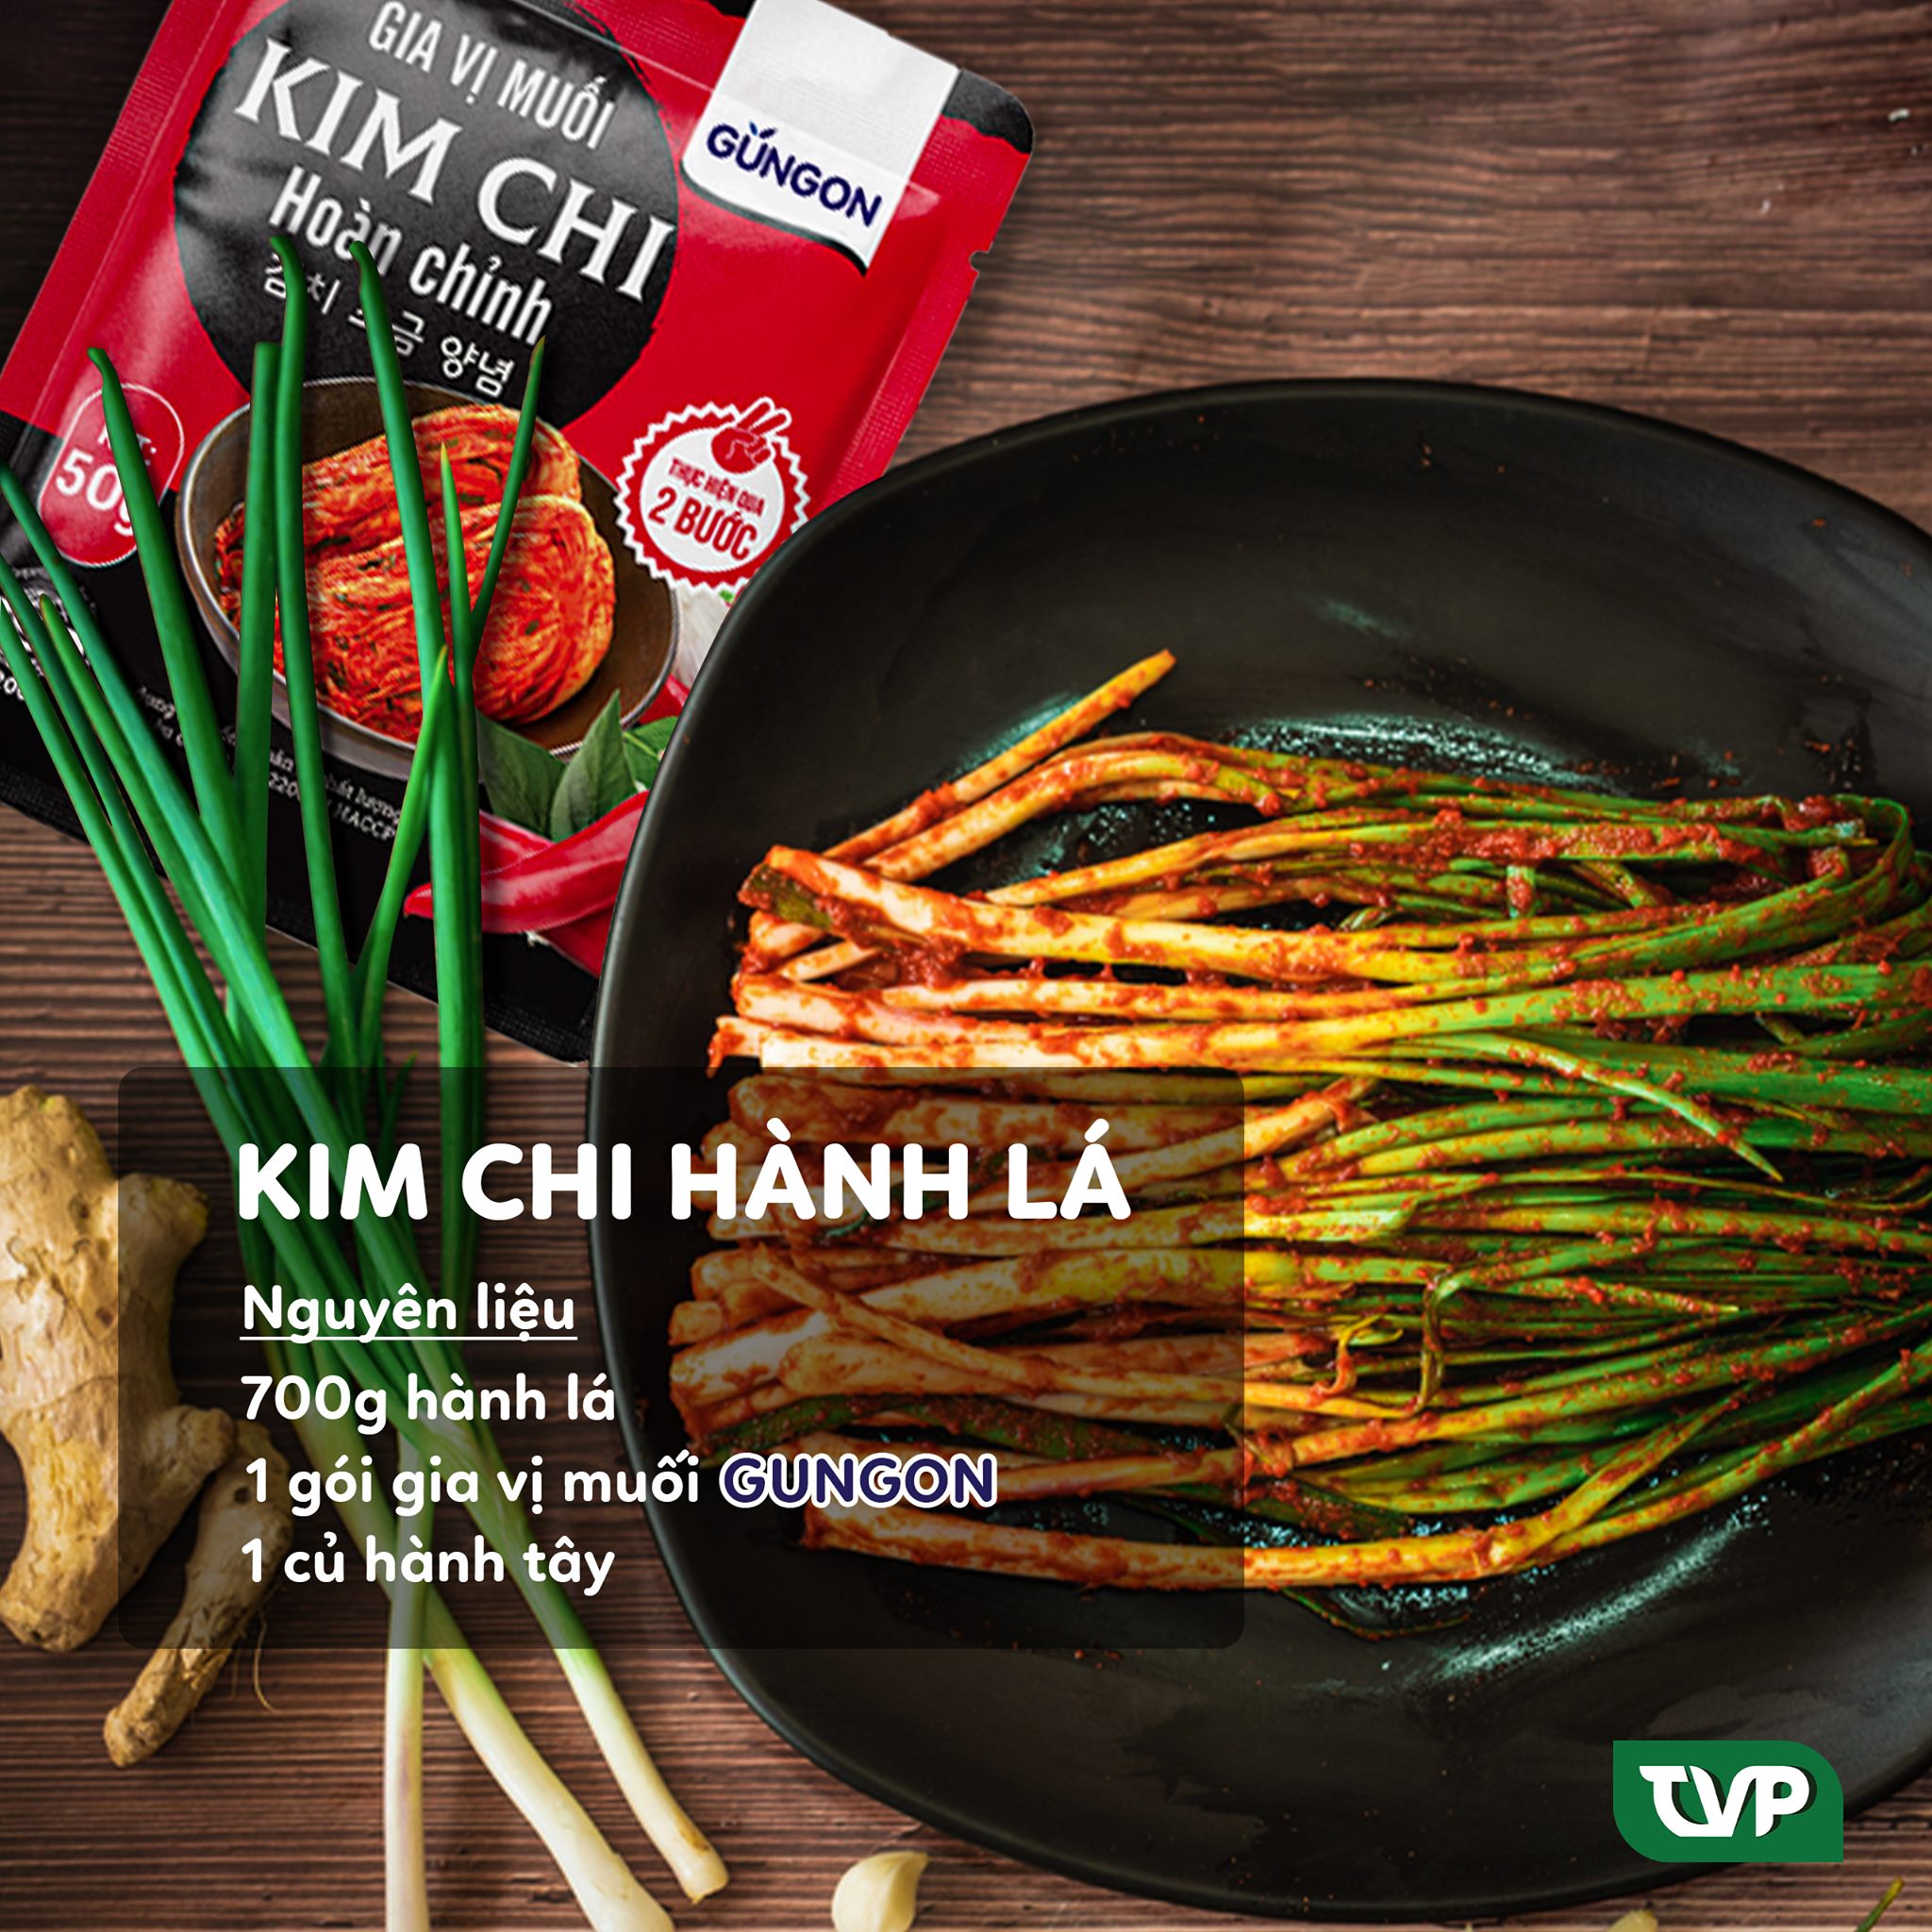 Combo 2 gói bột gia vị muối kim chi Gungon 2 bước chuẩn  vị Hàn Quốc làm được 1.4kg kimchi